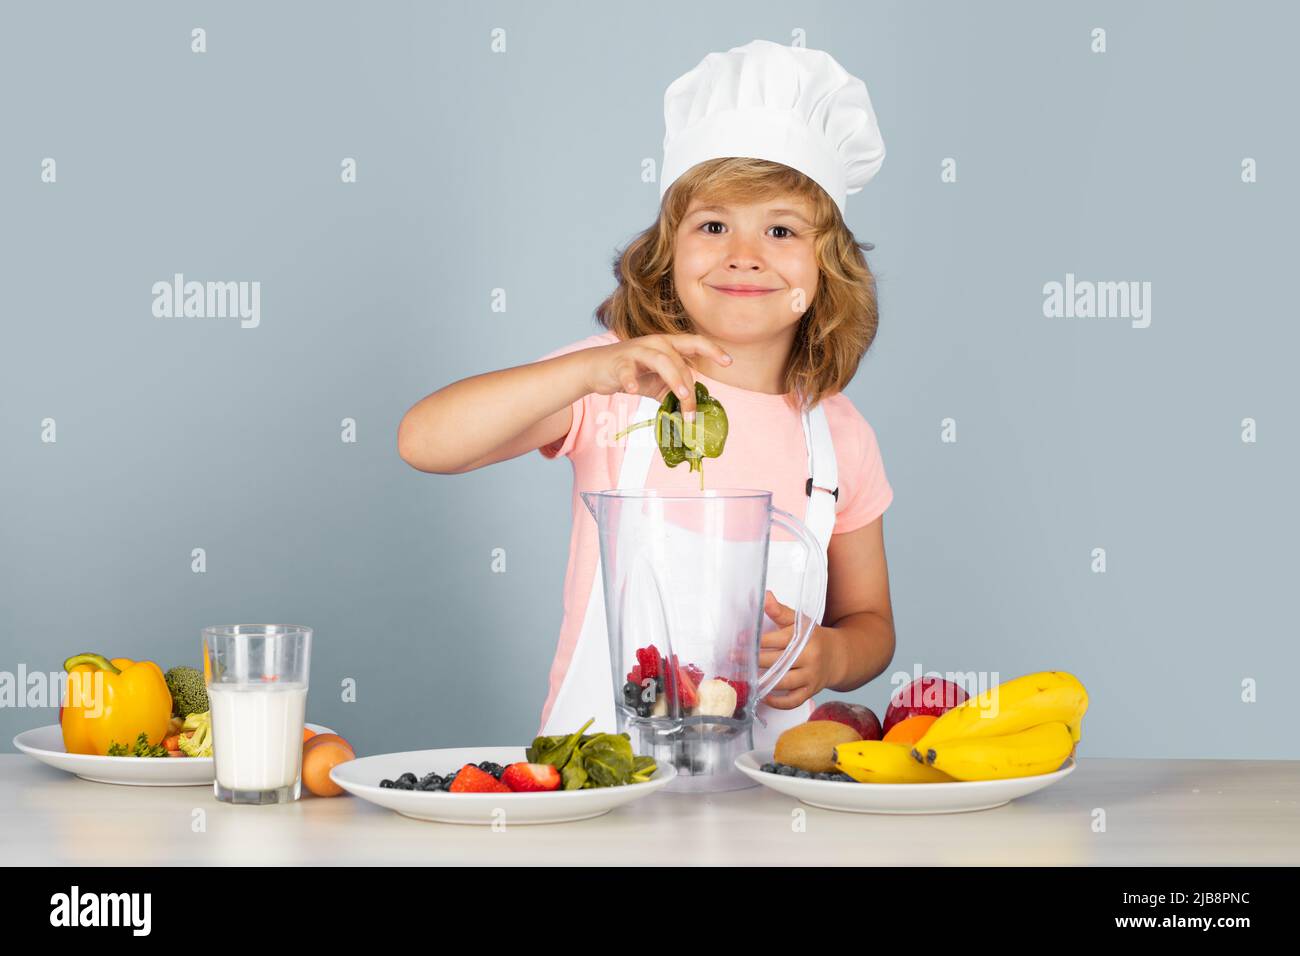 Portrait d'un enfant de 7, 8 ans en chapeau de cuisinier et tablier faire de la salade de fruits avec des épinards et cuisiner dans la cuisine. Joli petit blond joyeux sourire Banque D'Images